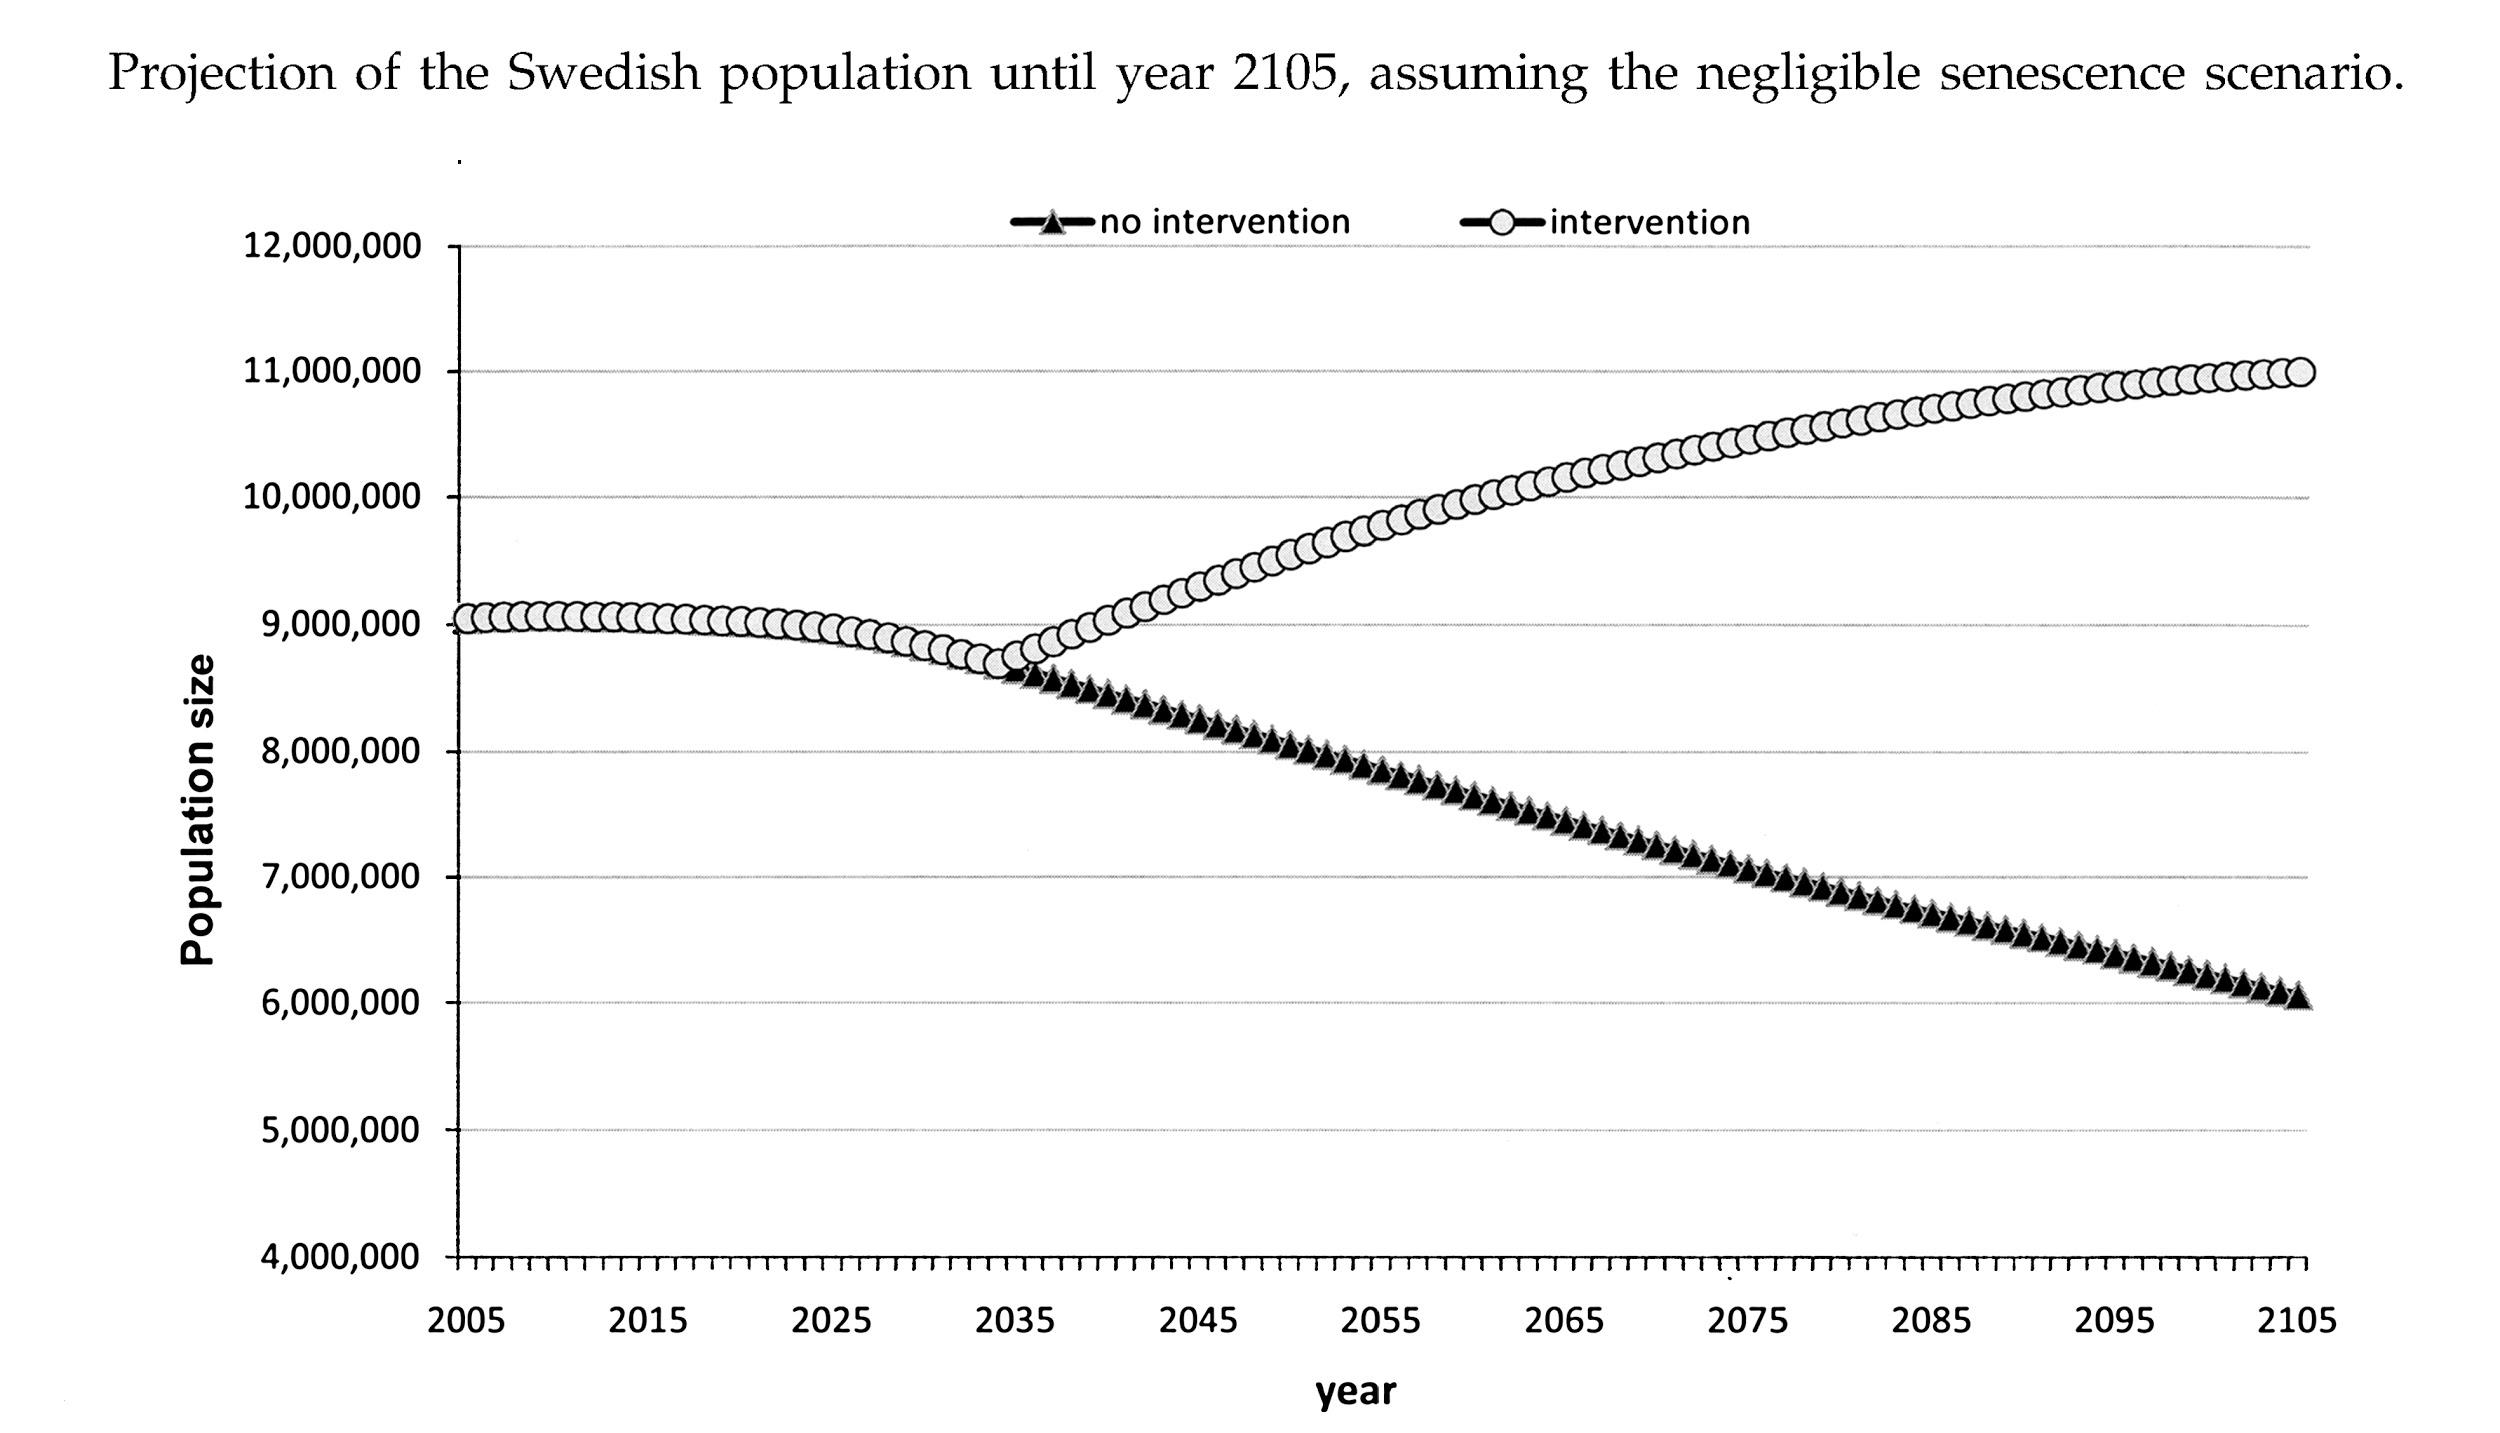 如果解决老龄化问题，预计到2105年瑞典人口将发生变化。